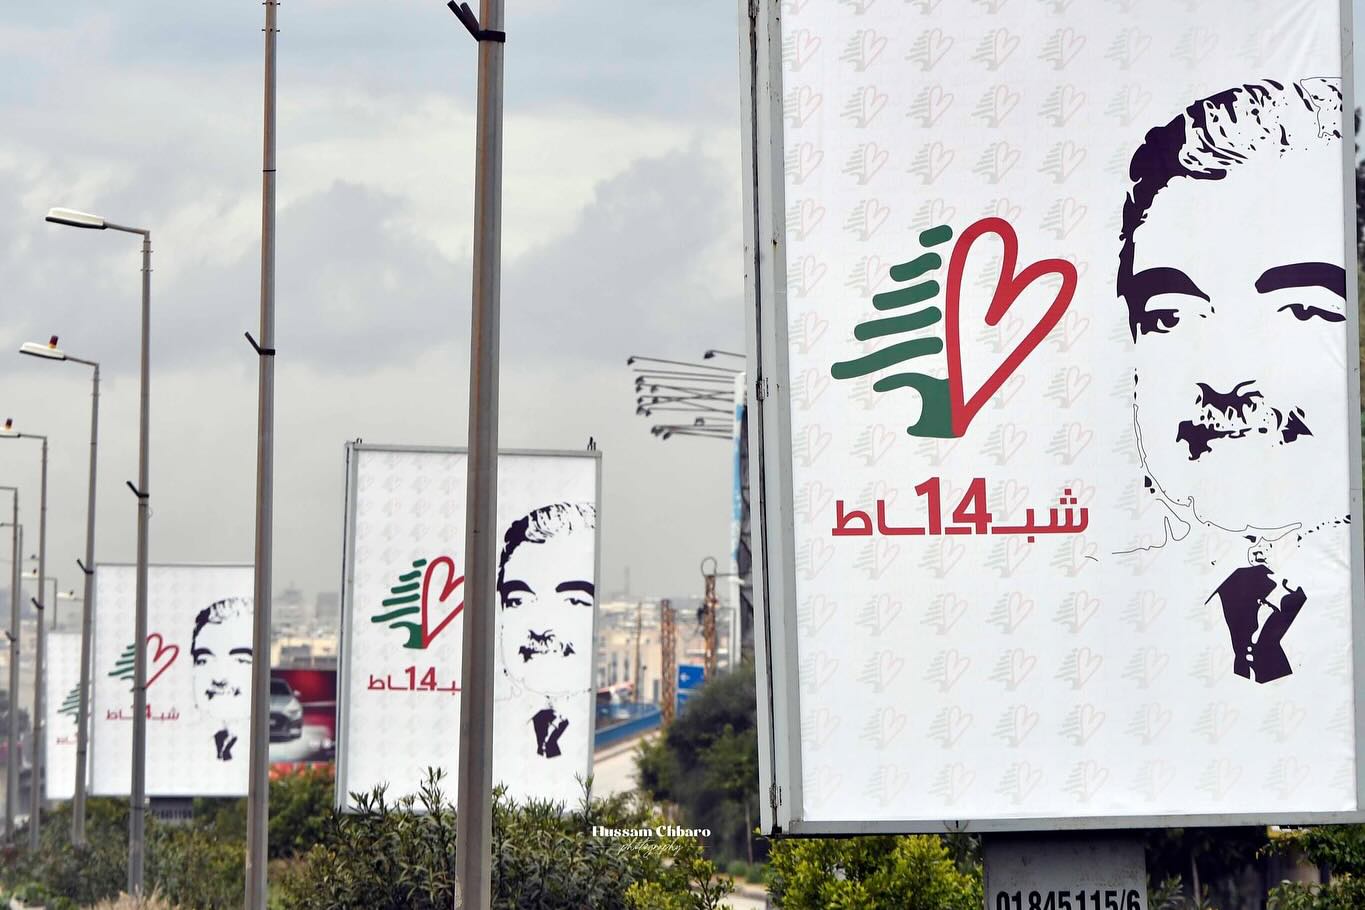 19 سنةً على الغياب… هناك يرقد لبنان لا رفيق الحريري